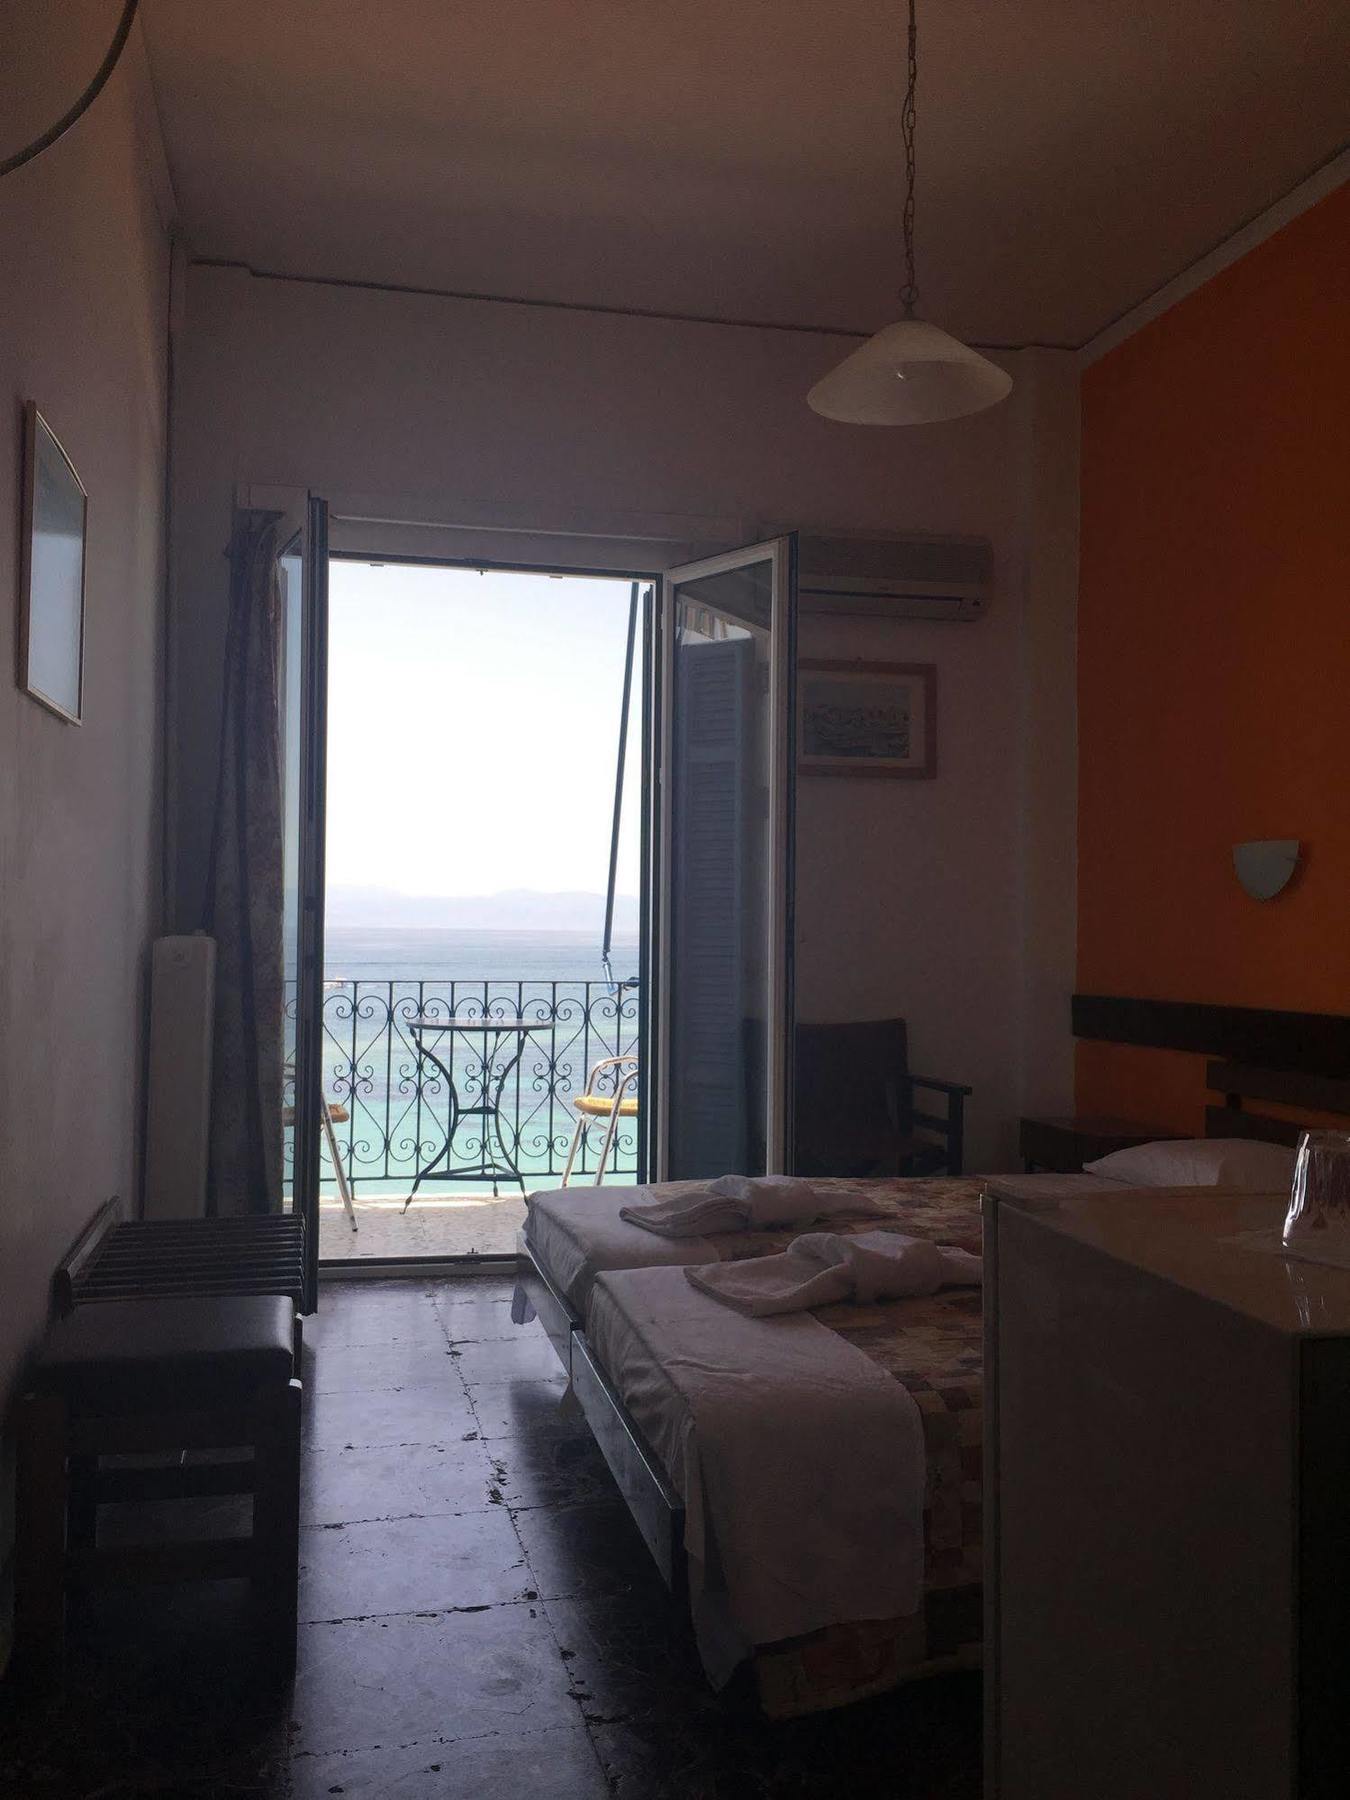 Hotel Areti Aegina Exterior photo